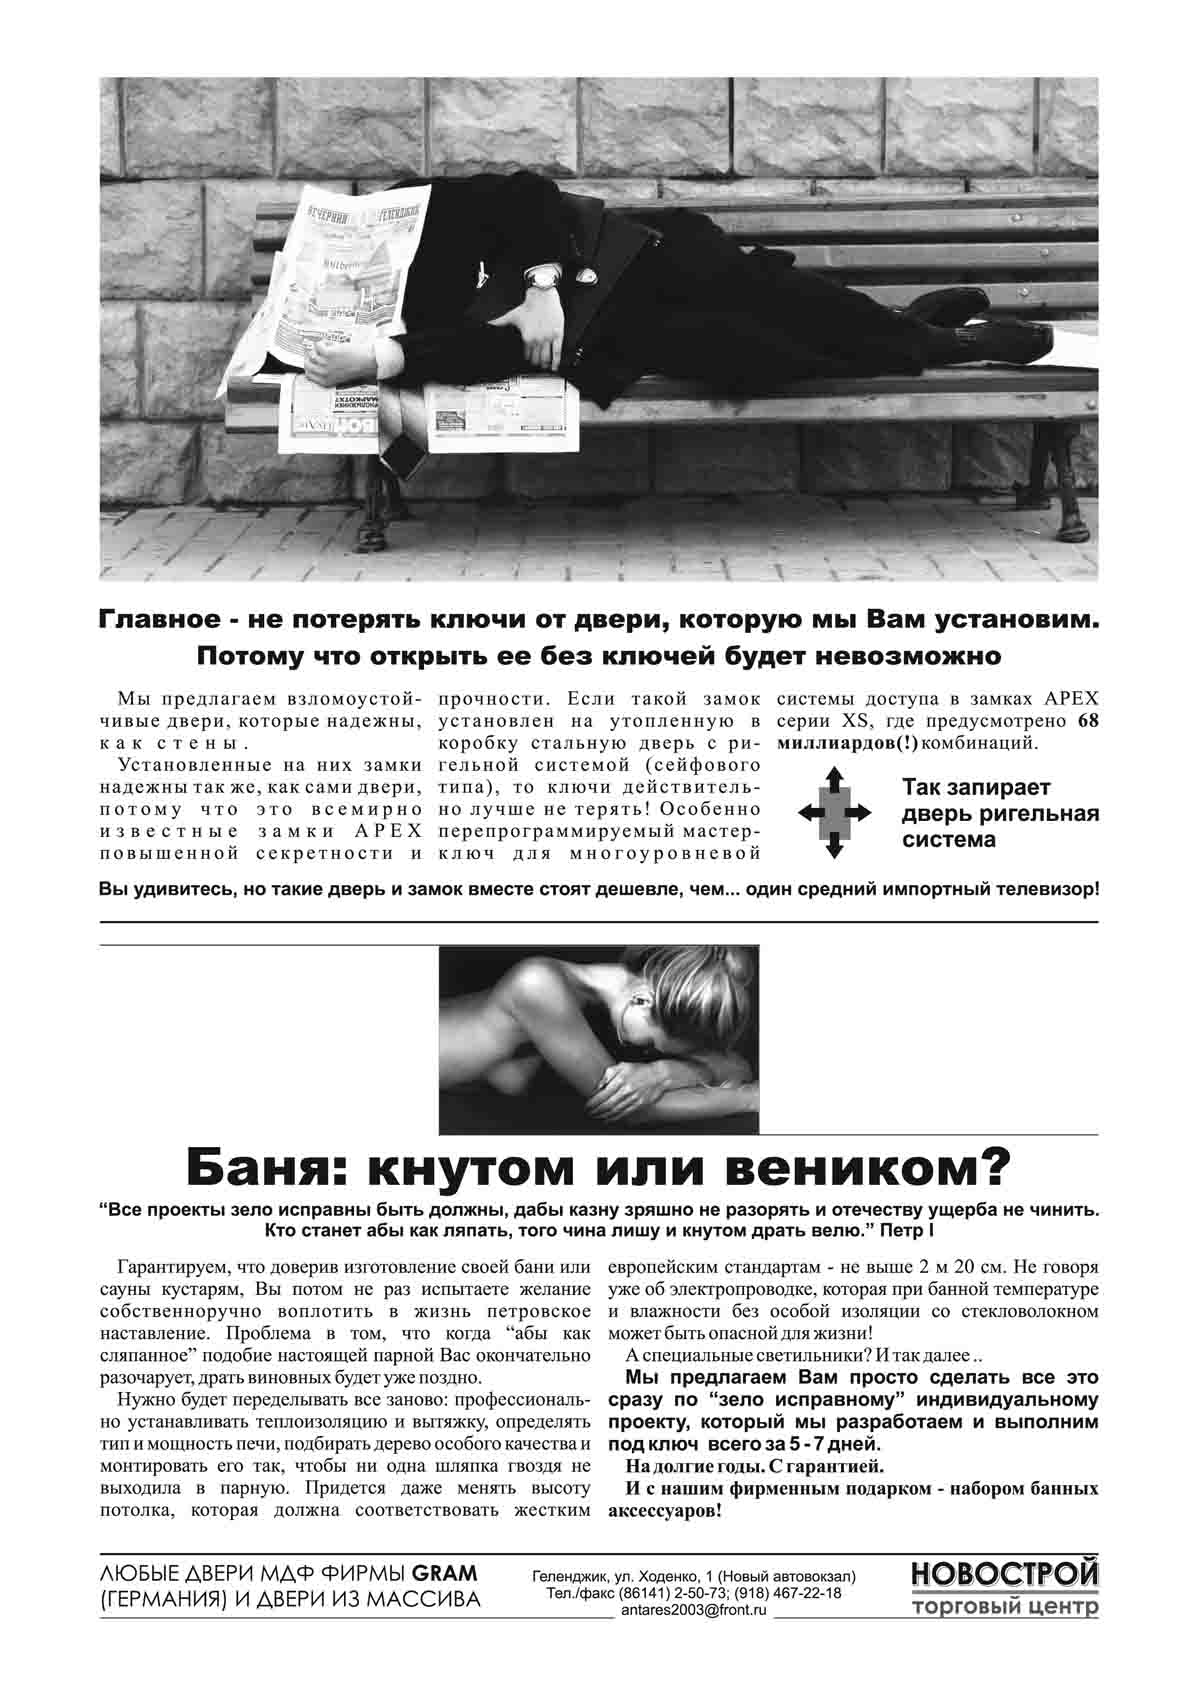 Печатная реклама, Денис Богомолов, Новострой, двери, бани под ключ